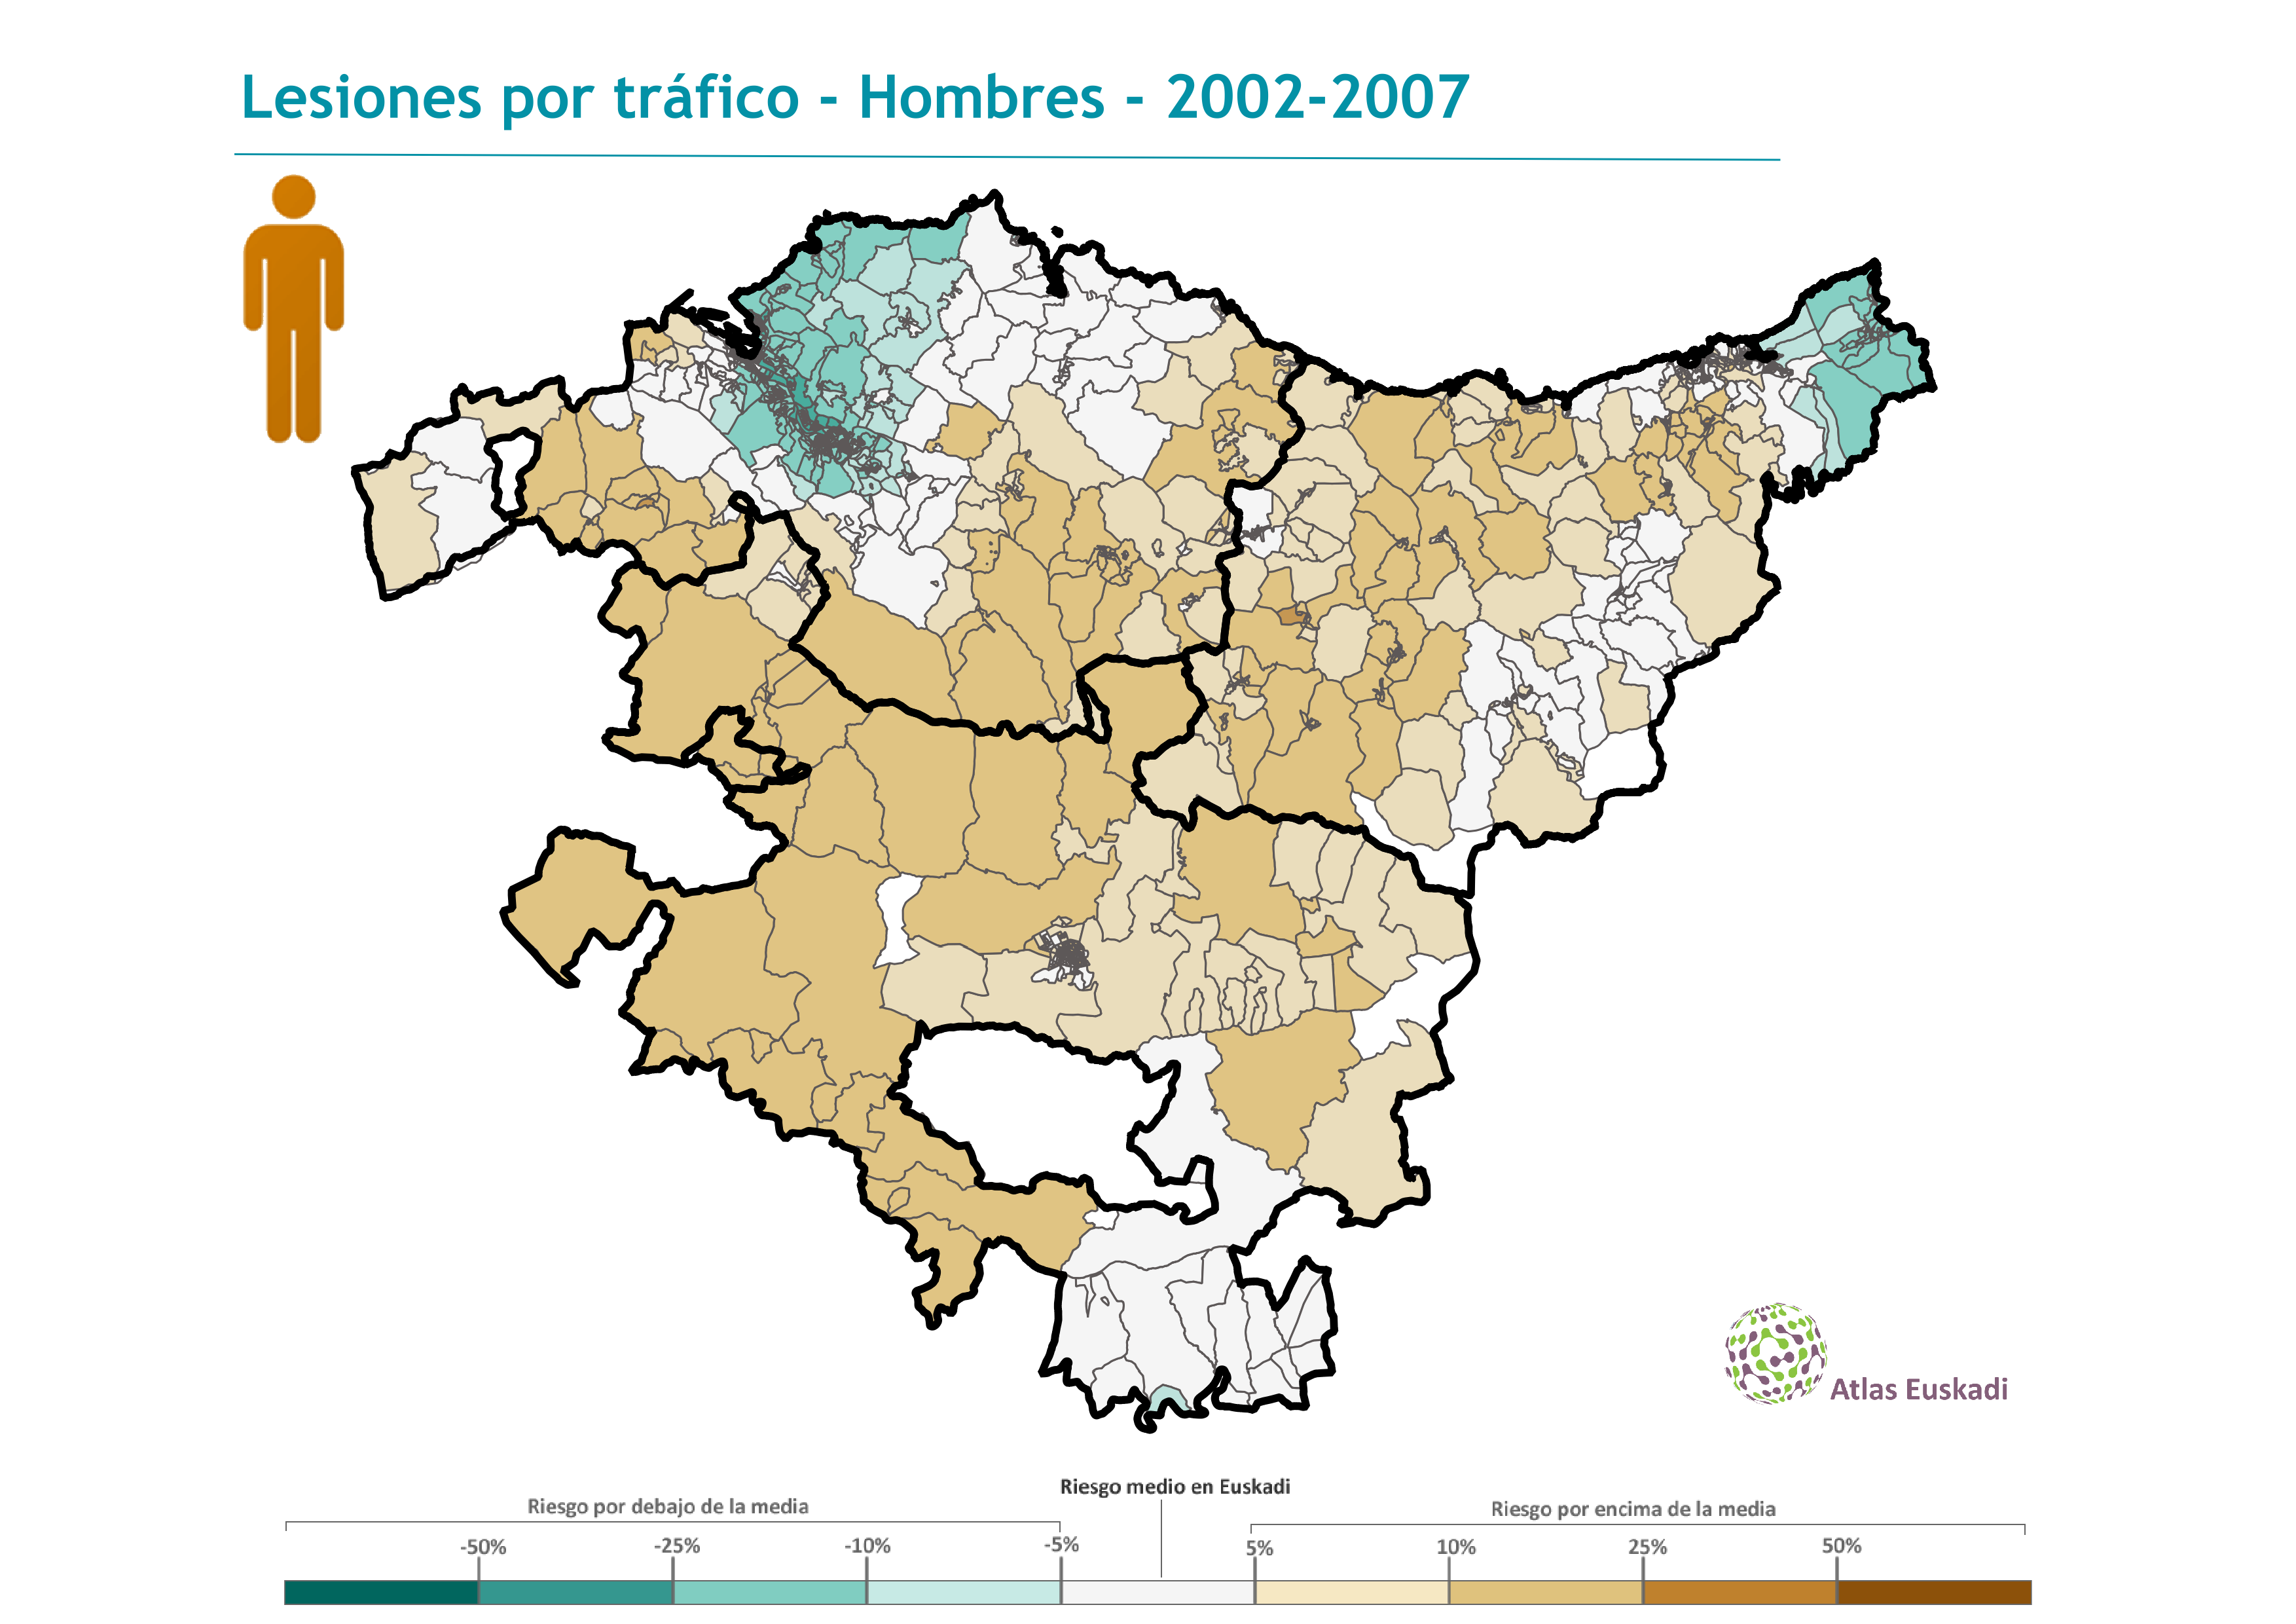 Lesiones por tráfico hombres  2002-2007 Euskadi